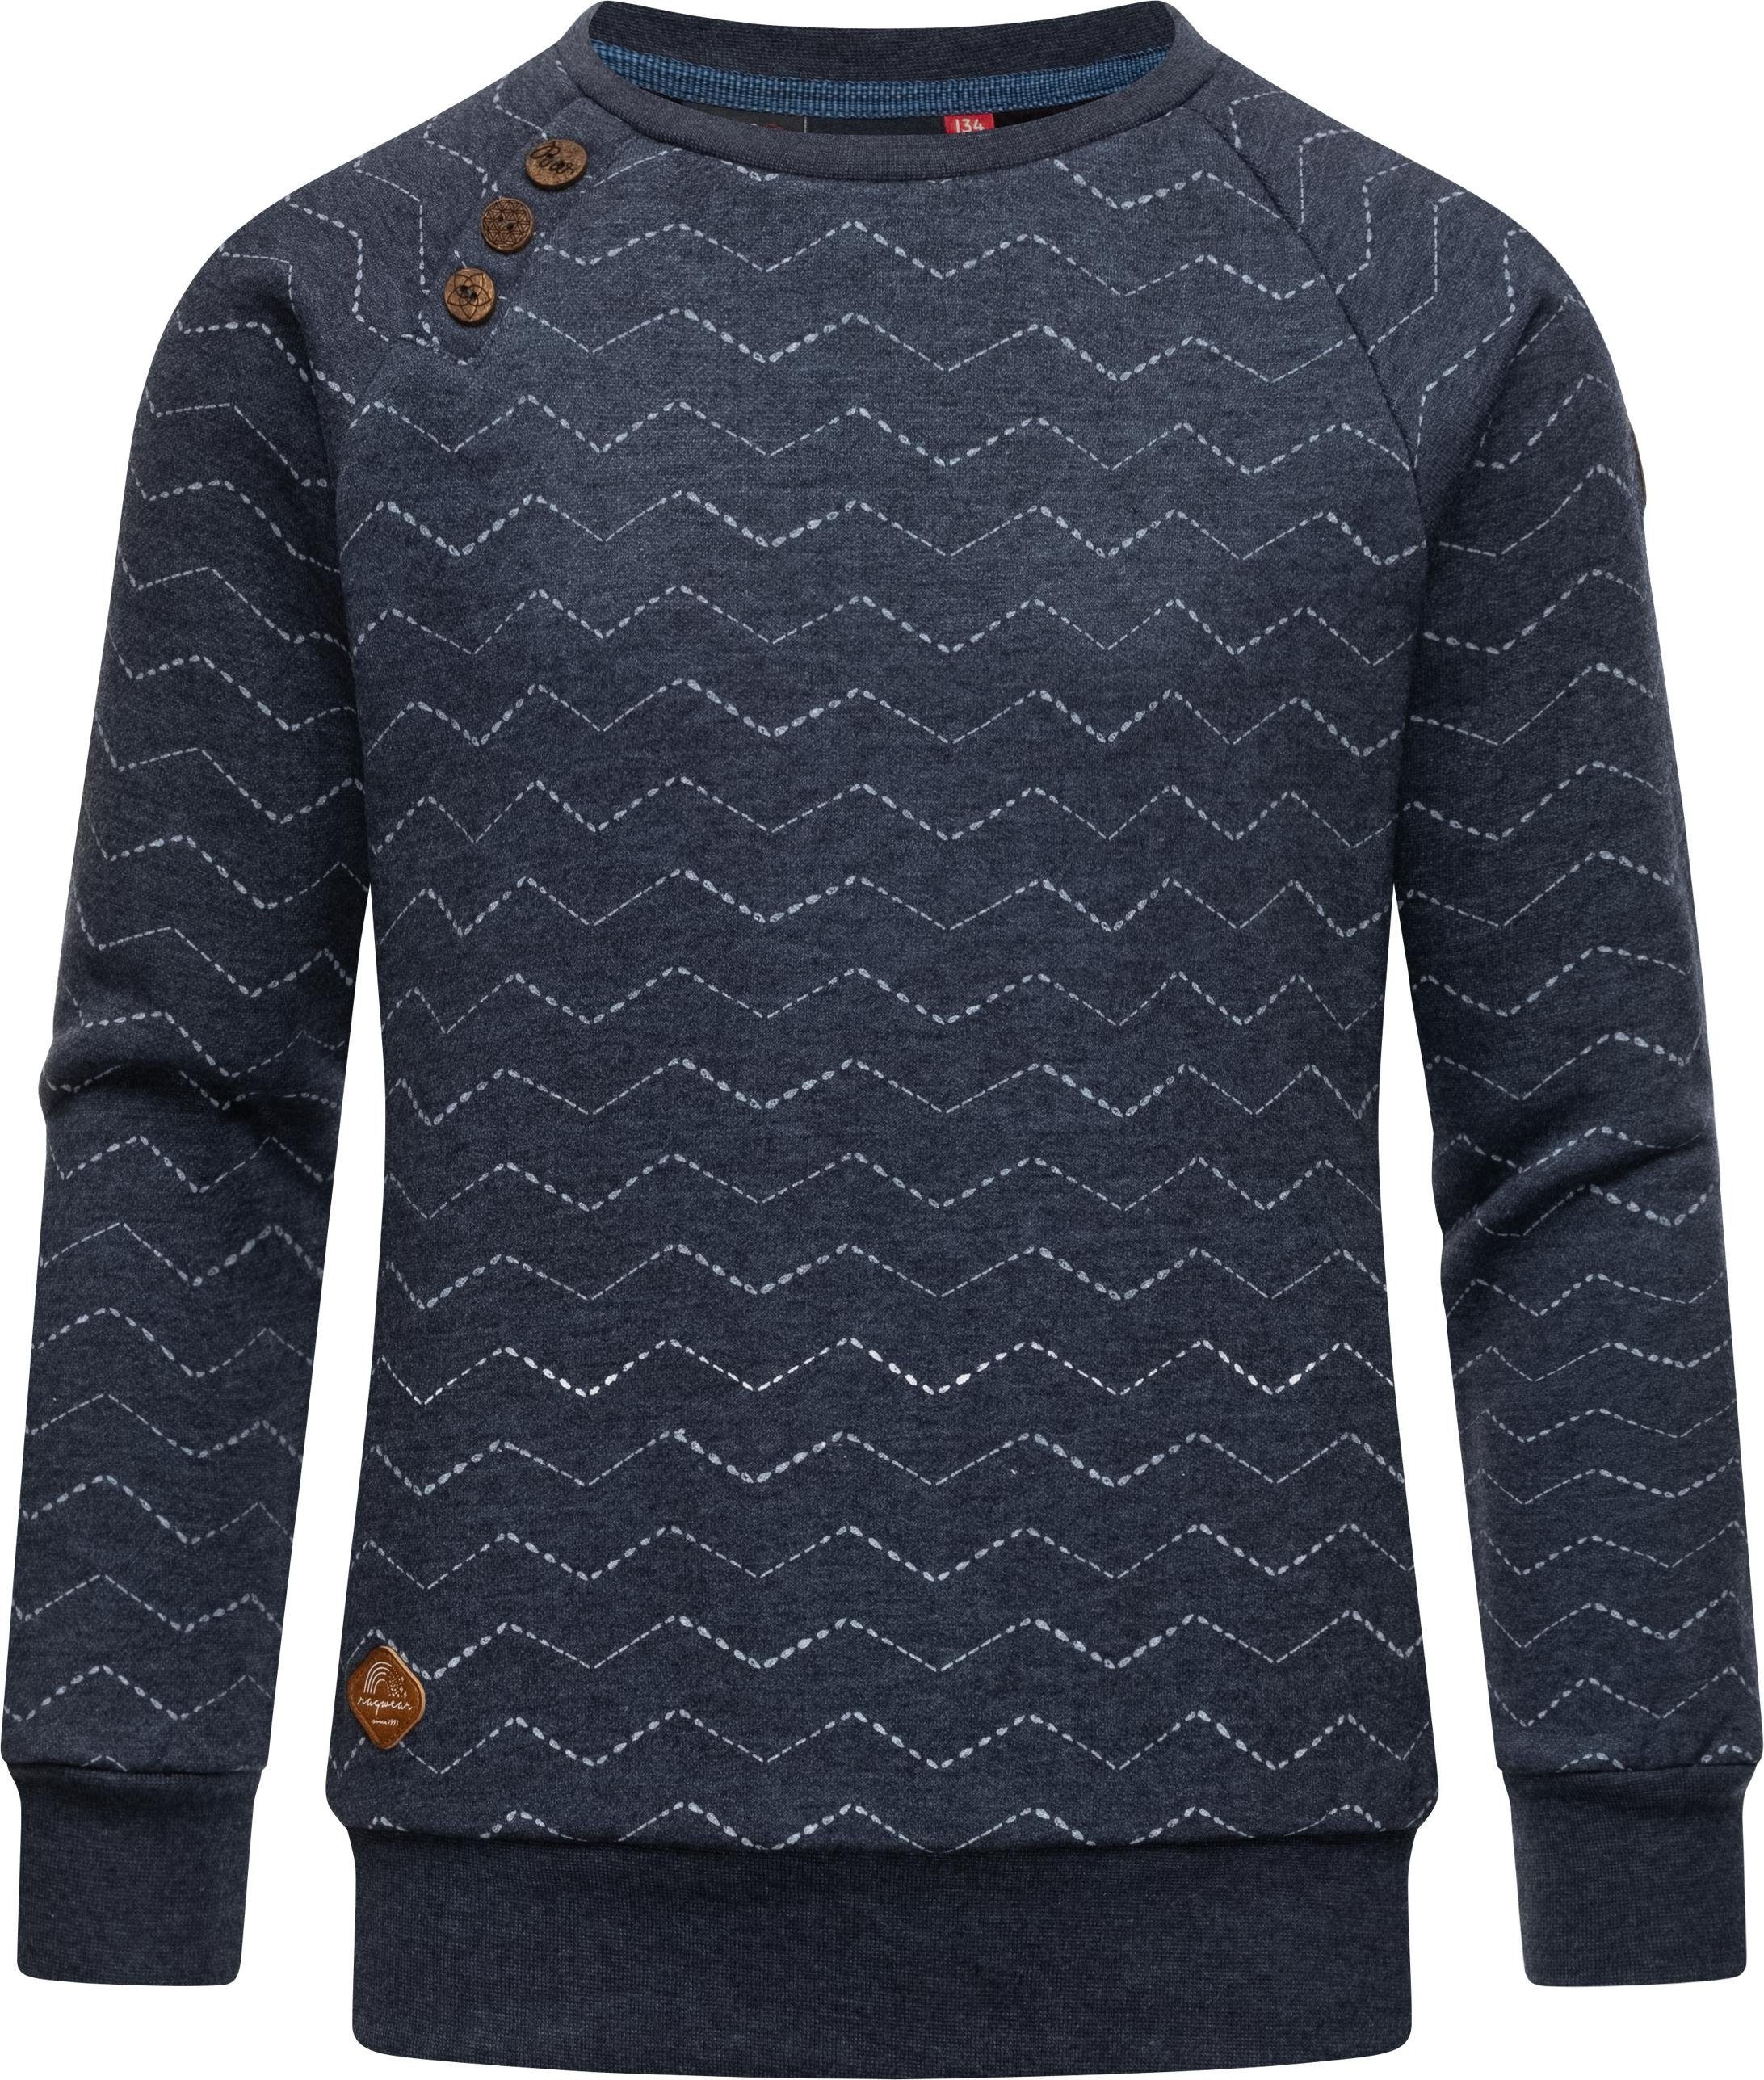 Ragwear Sweater Darinka Zig Zag stylisches Mädchen Sweatshirt mit Zick-Zack-Muster navy